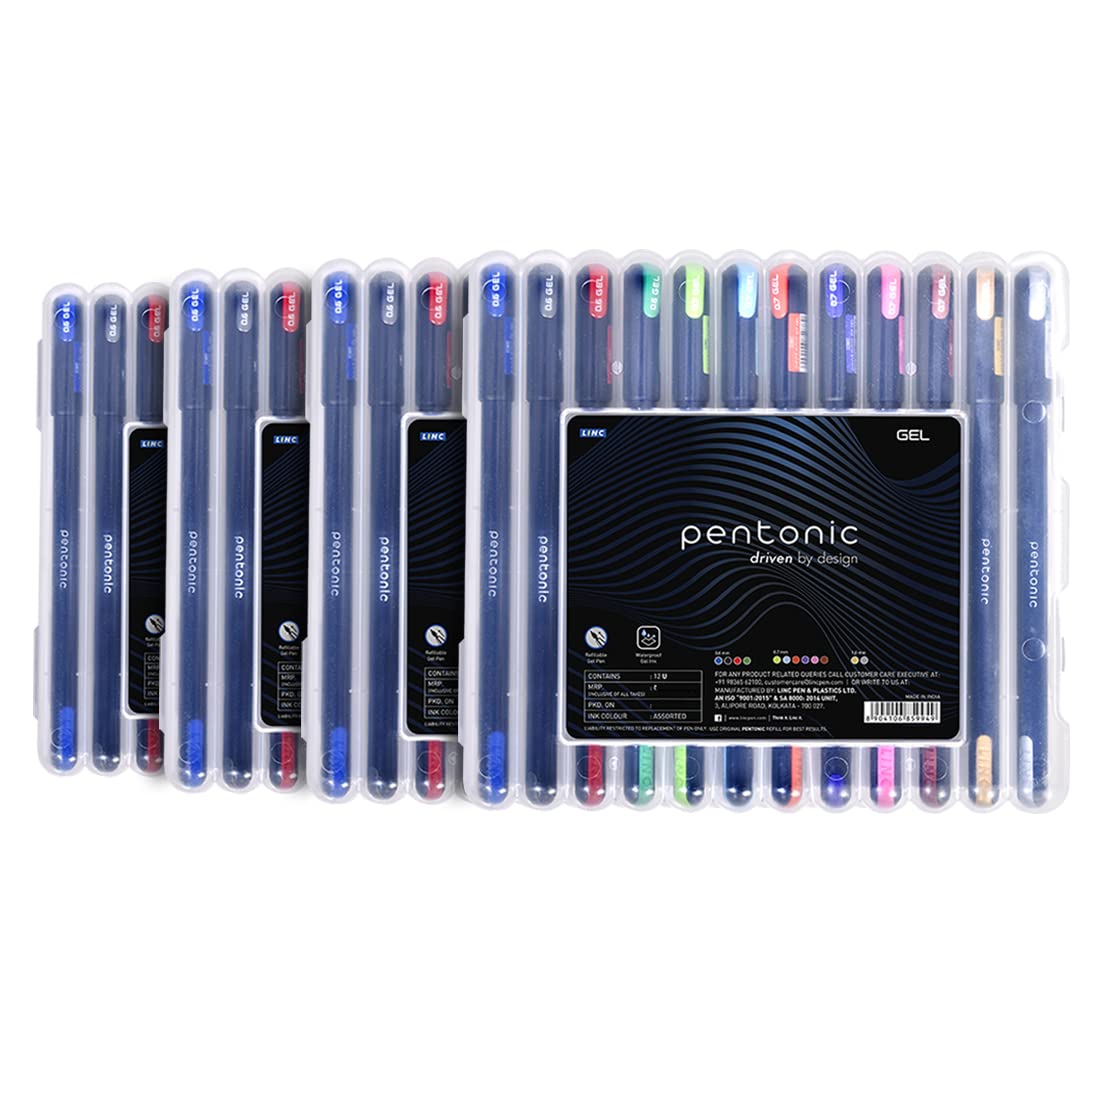 Pentonic 0.6mm Gel Pen - Multicolor Ink